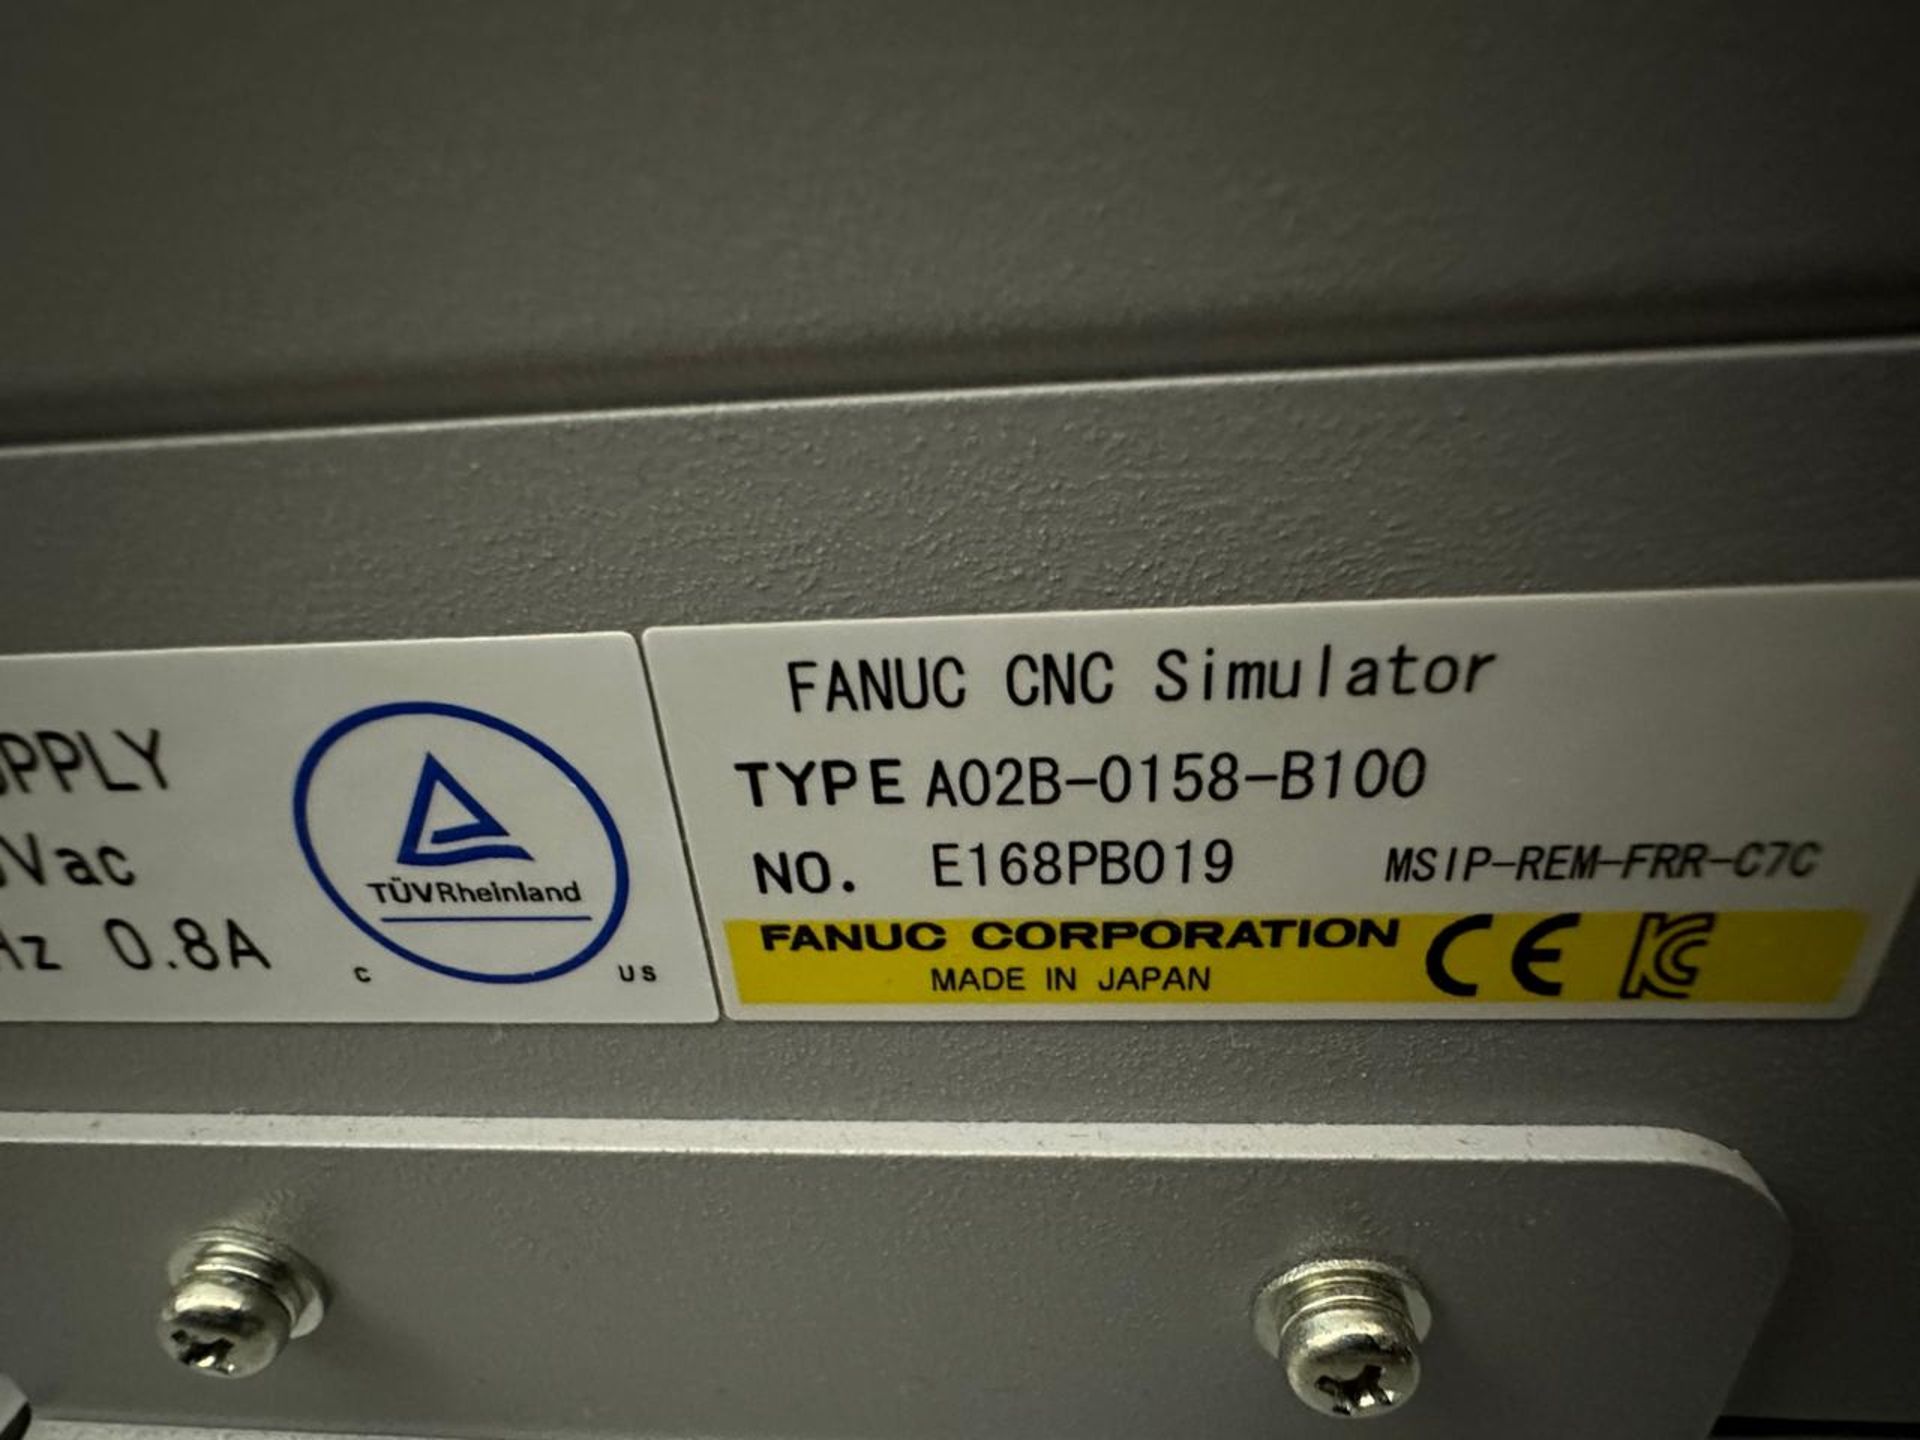 Fanuc A02B-0158-B100 (3) CNC Simulators - Image 5 of 6